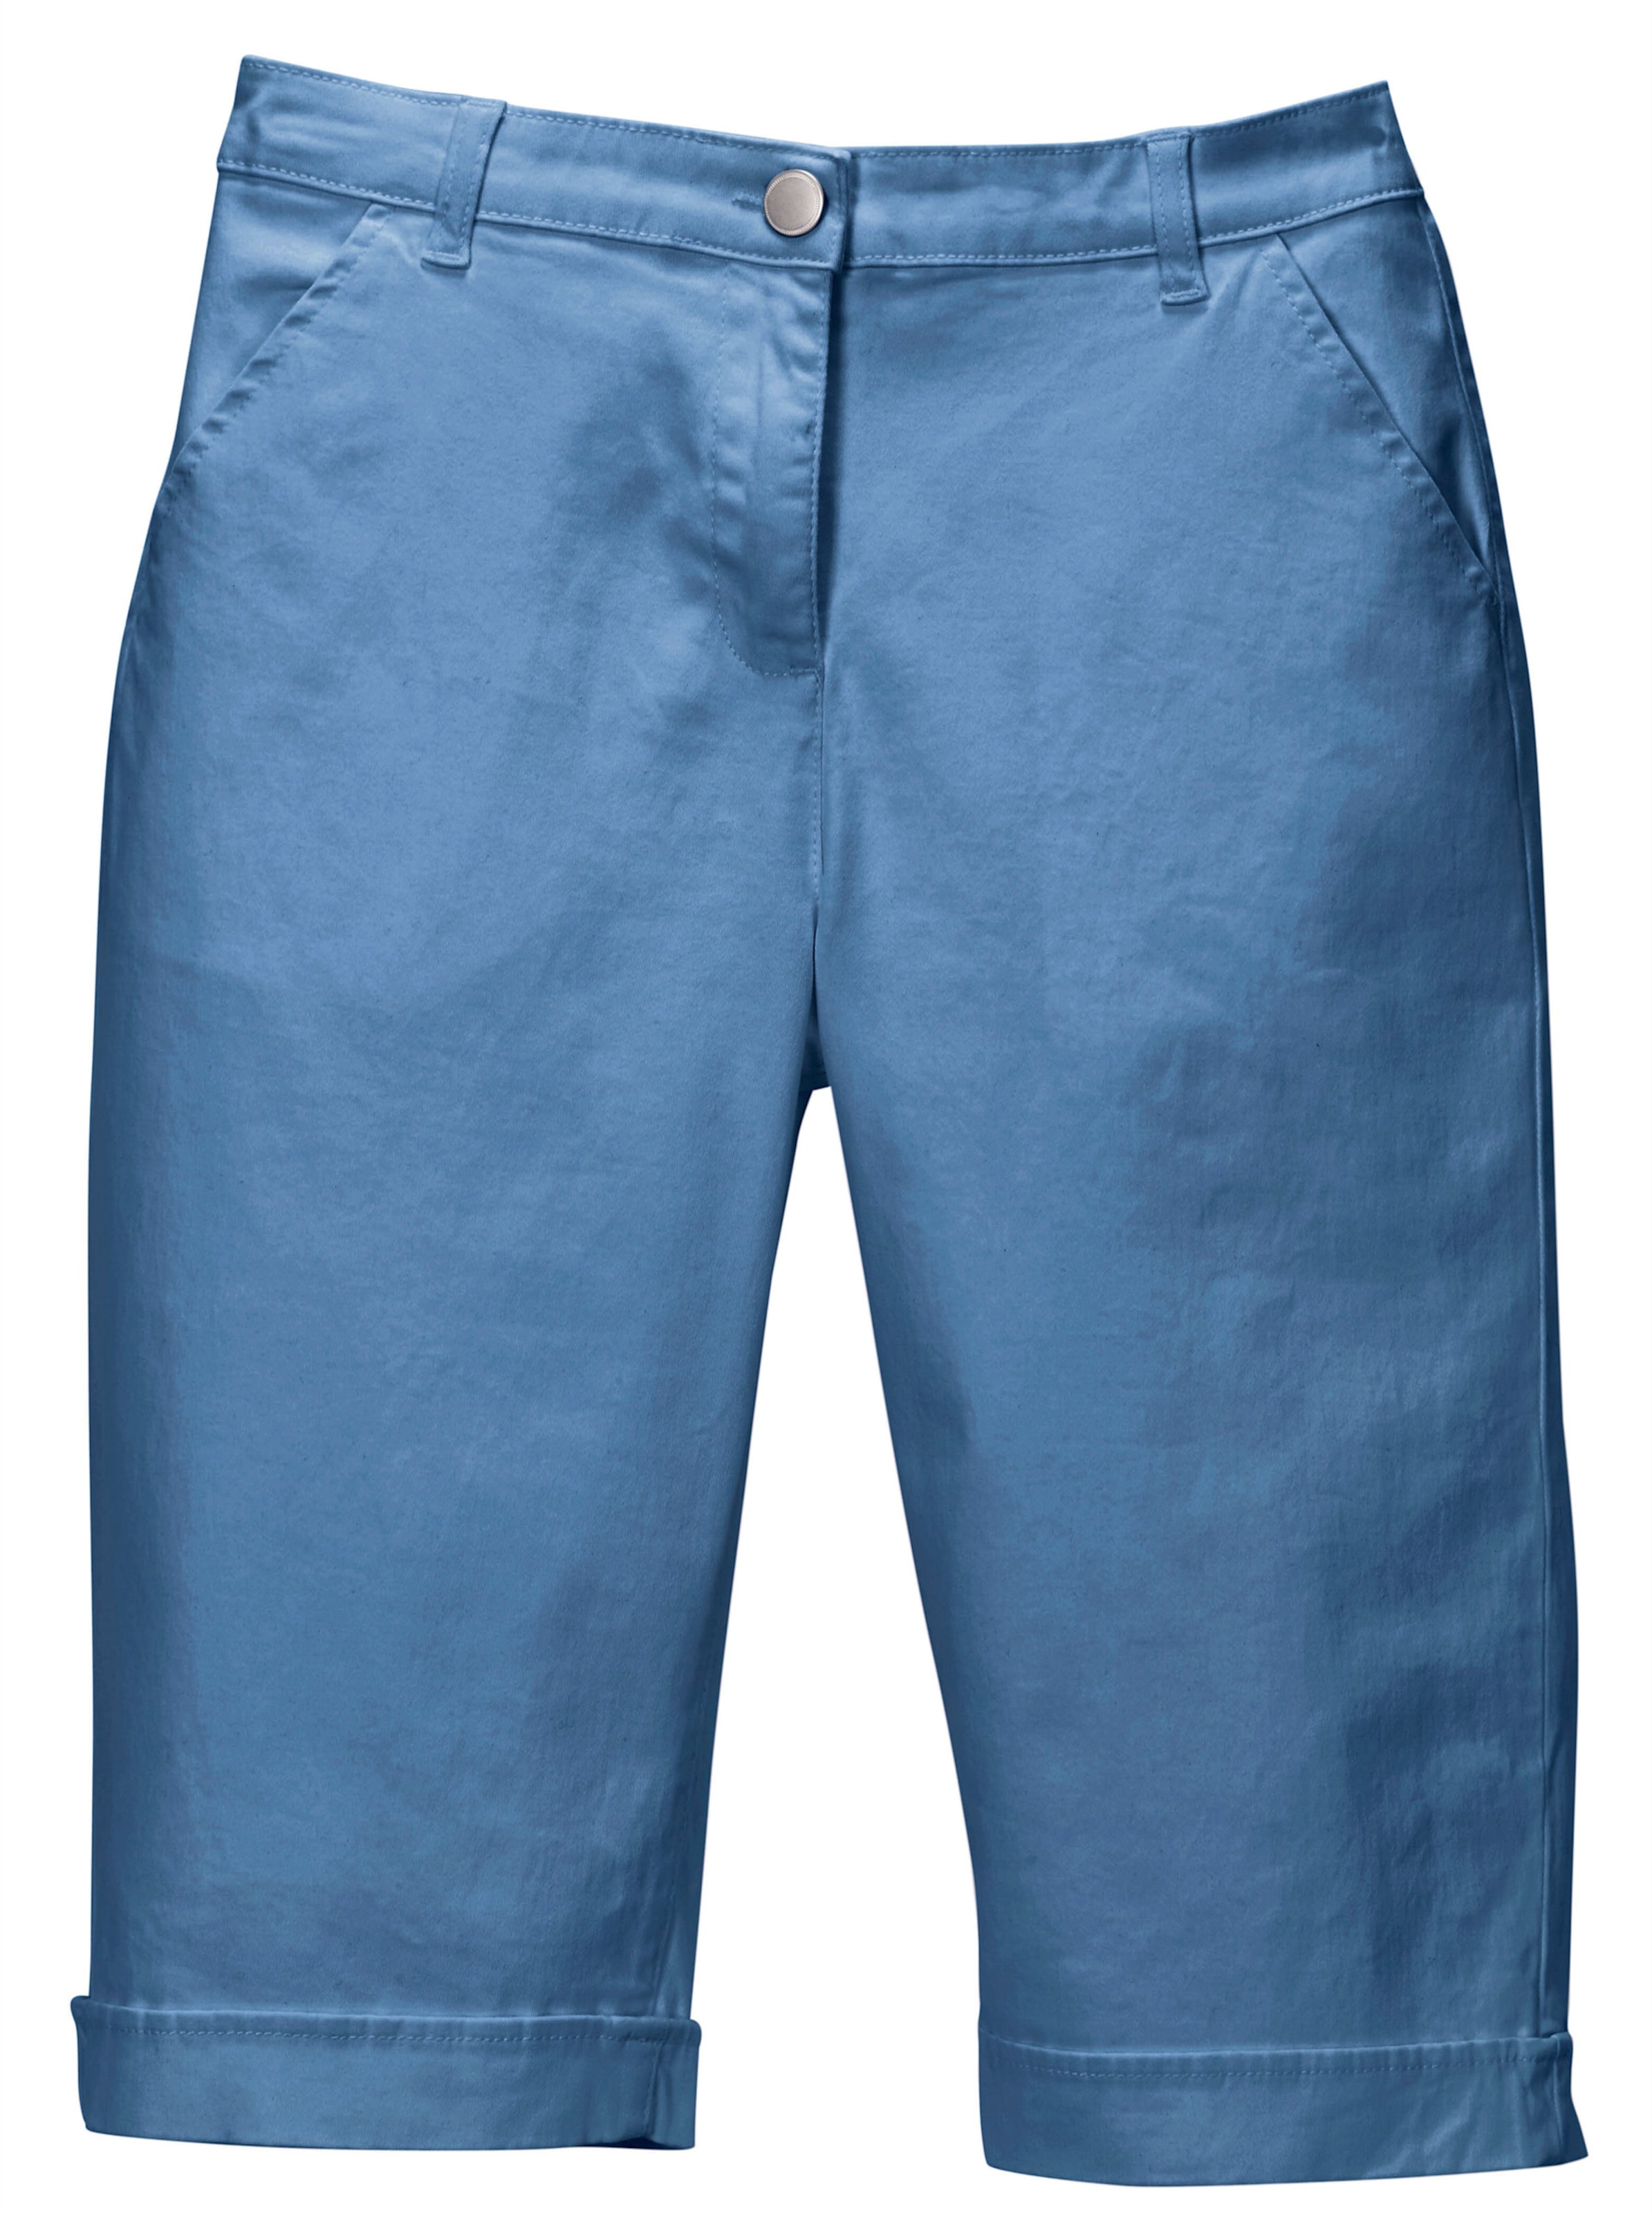 VORNE günstig Kaufen-Jeansbermudas in blau von heine. Jeansbermudas in blau von heine <![CDATA[Lässige Jeans-Bermudas in aktuellen Sommerfarben. Mit rückwärtigem Dehnbund, Gürtelschlaufen sowie Knopf und Reißverschluss. 2 Taschen vorne, 2 imitierte Gesäßtaschen. Am Sau